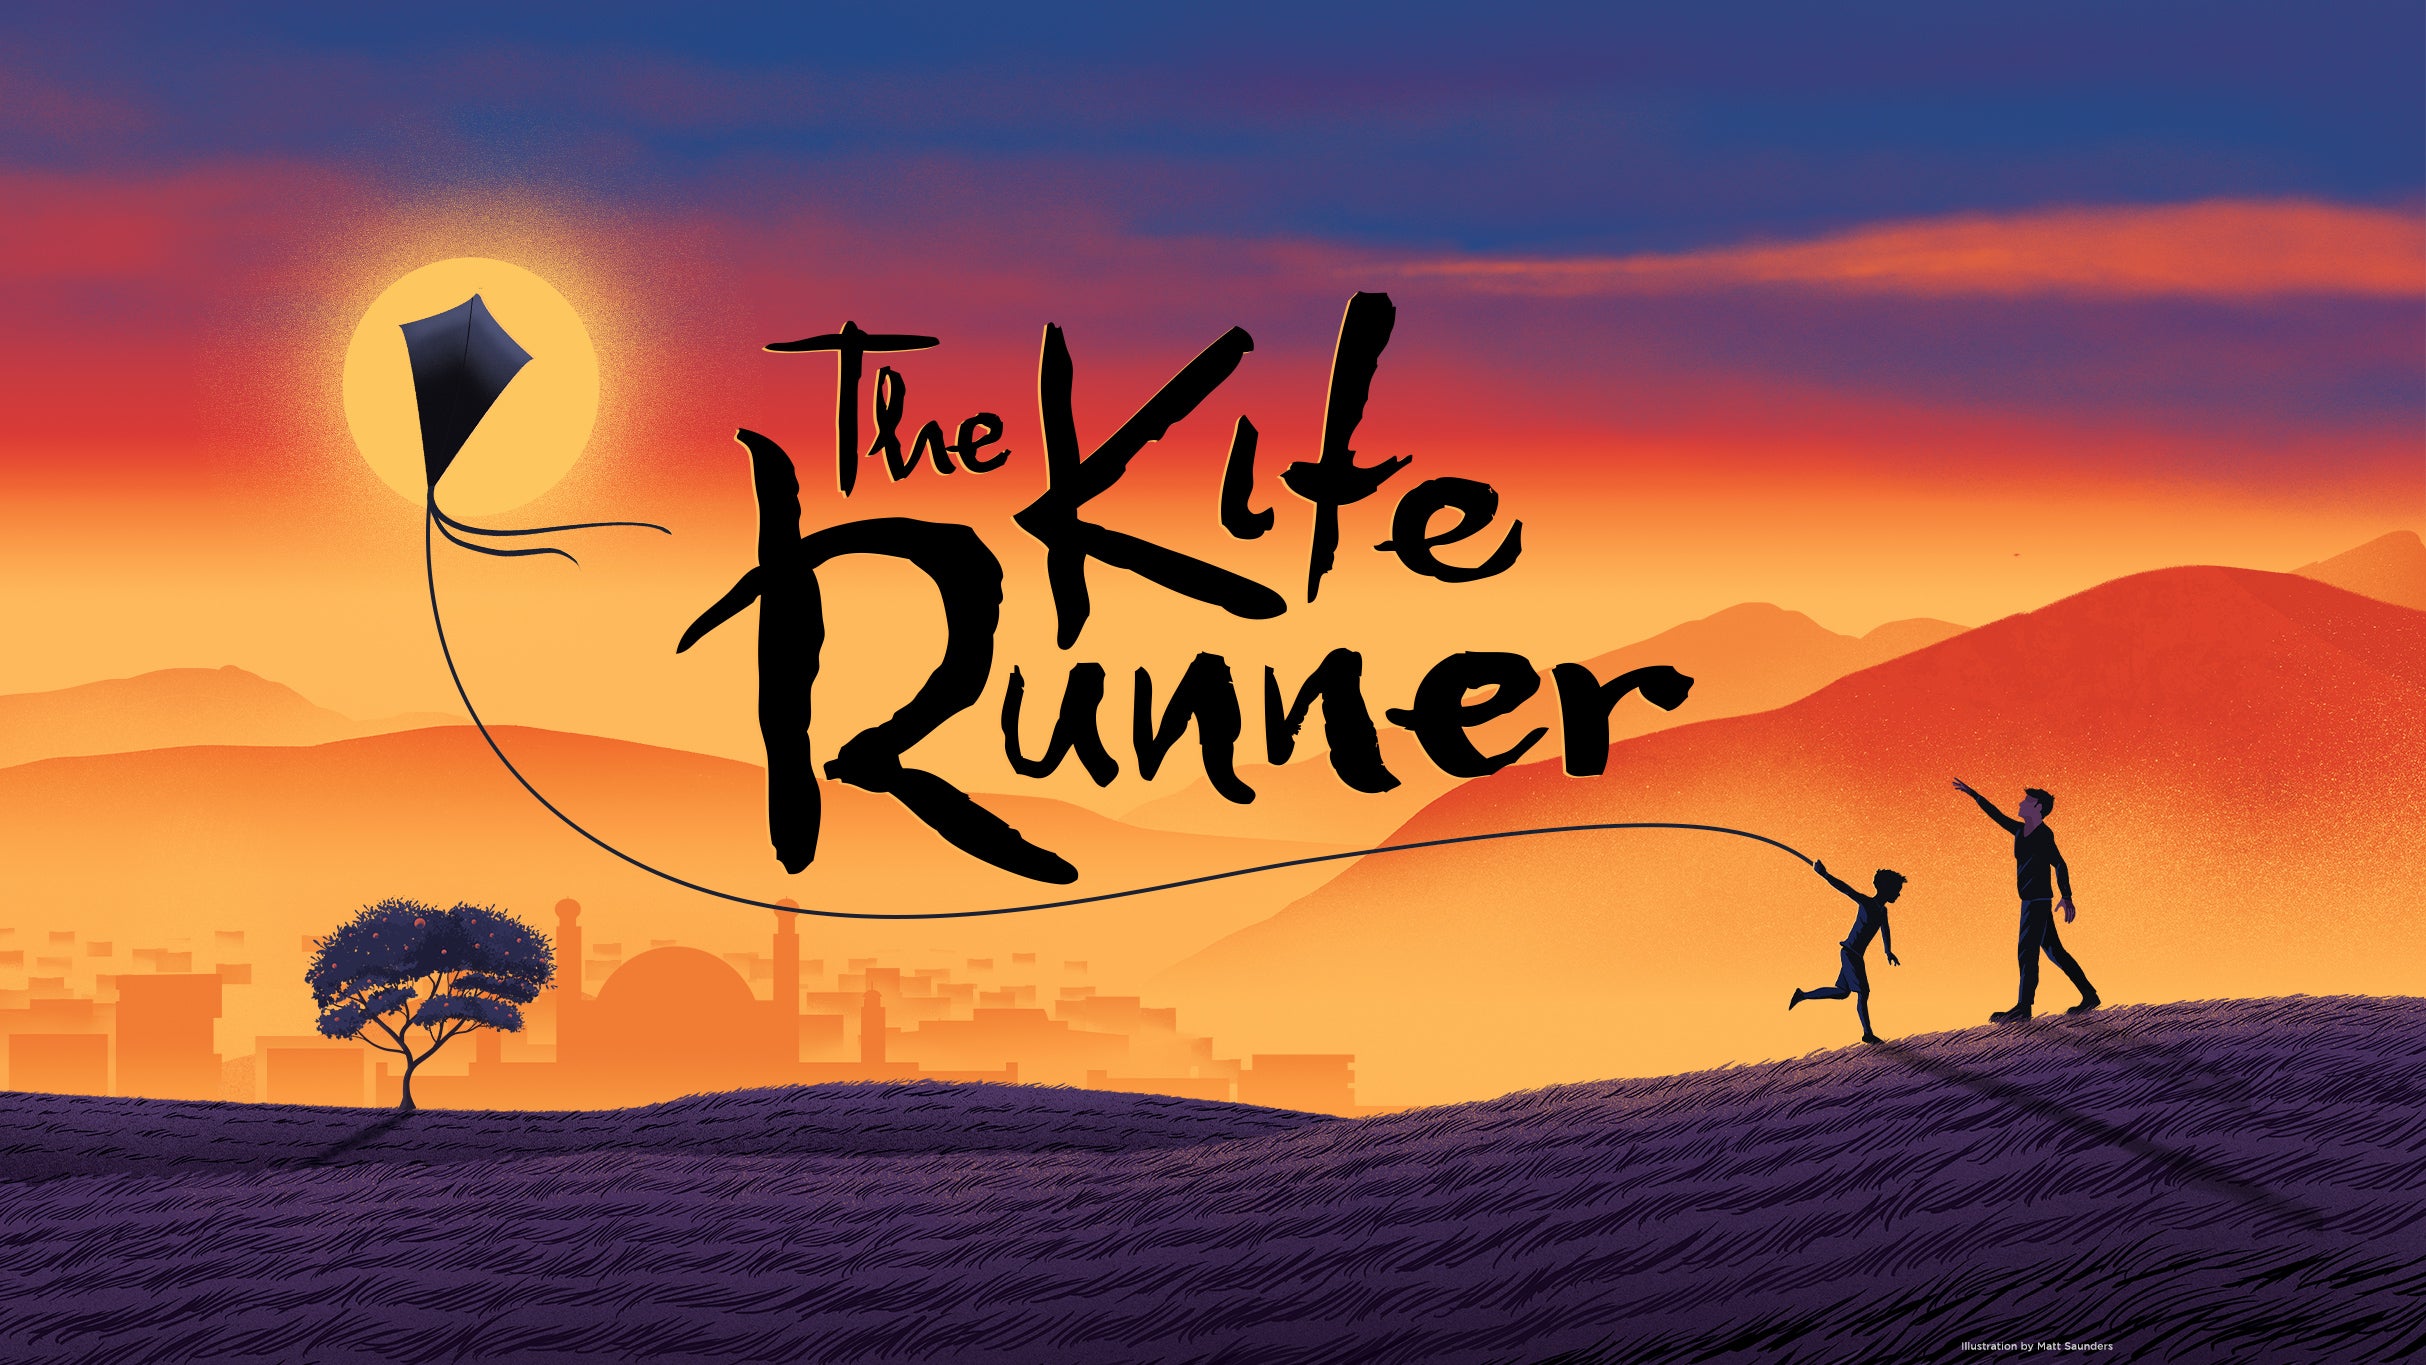 The Kite Runner (Chicago) presales in Chicago